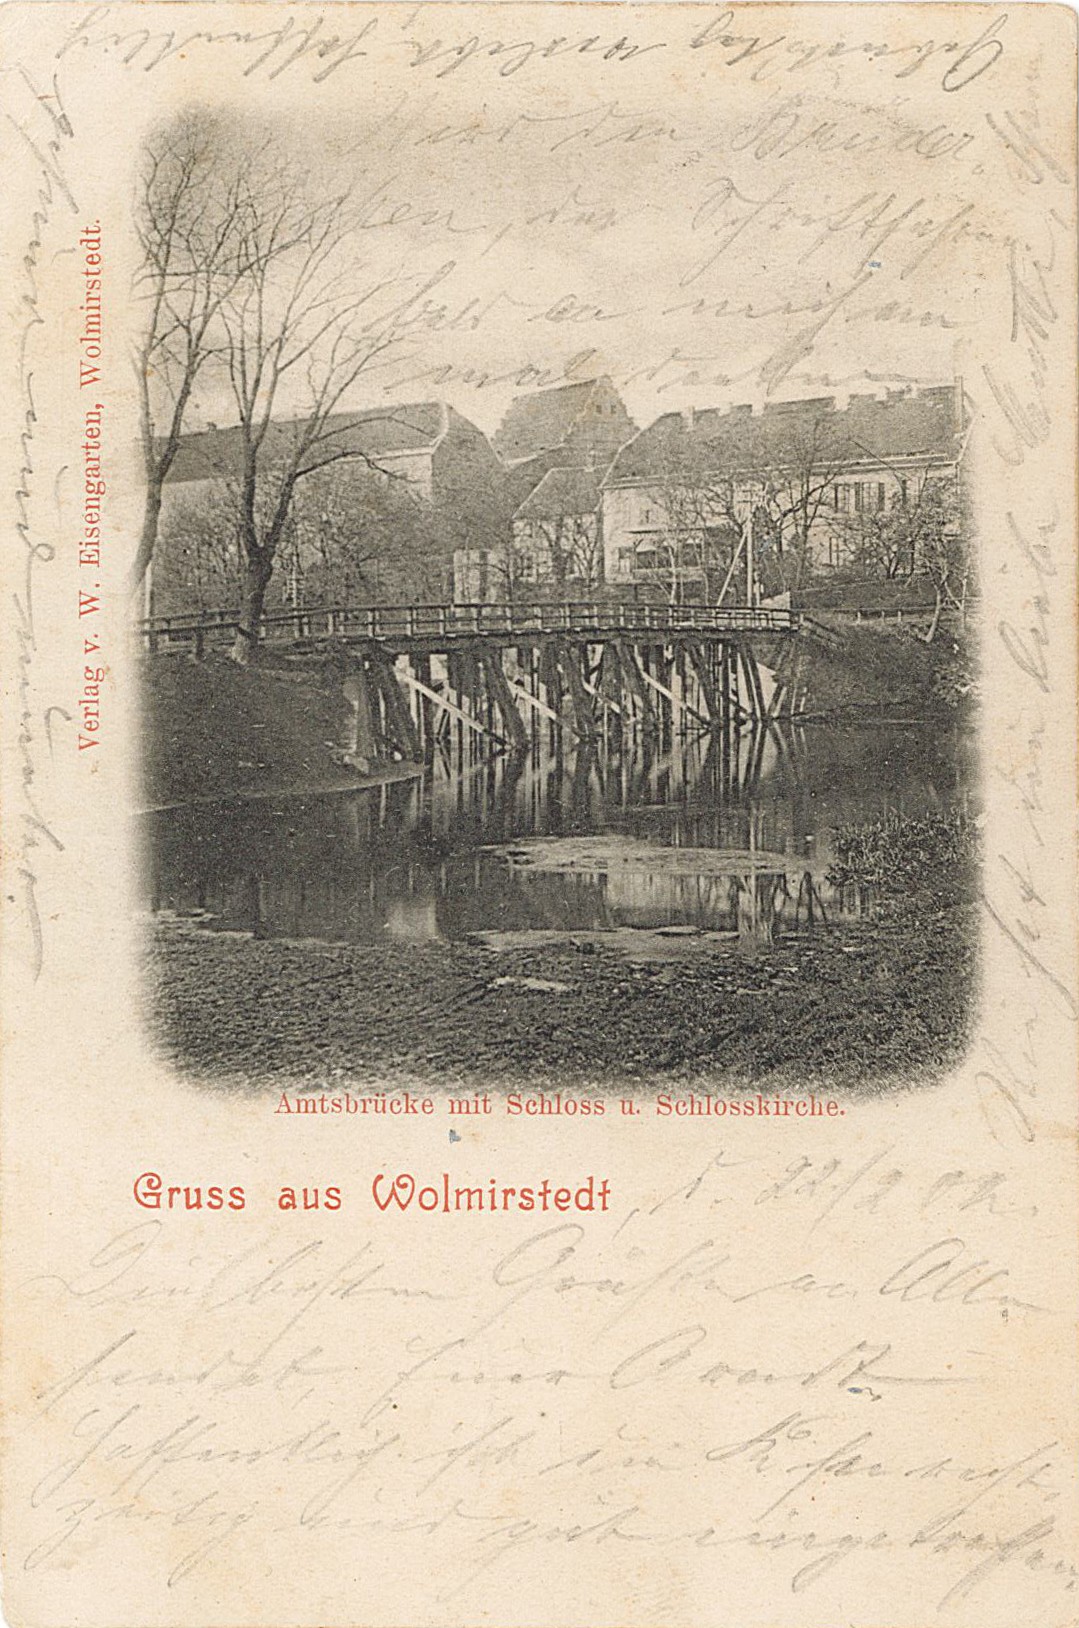 Postkarte "Gruss aus Wolmirstedt. Amtsbrücke mit Schloss u. Schlosskirche", 24.03.1902 (Museum Wolmirstedt RR-F)